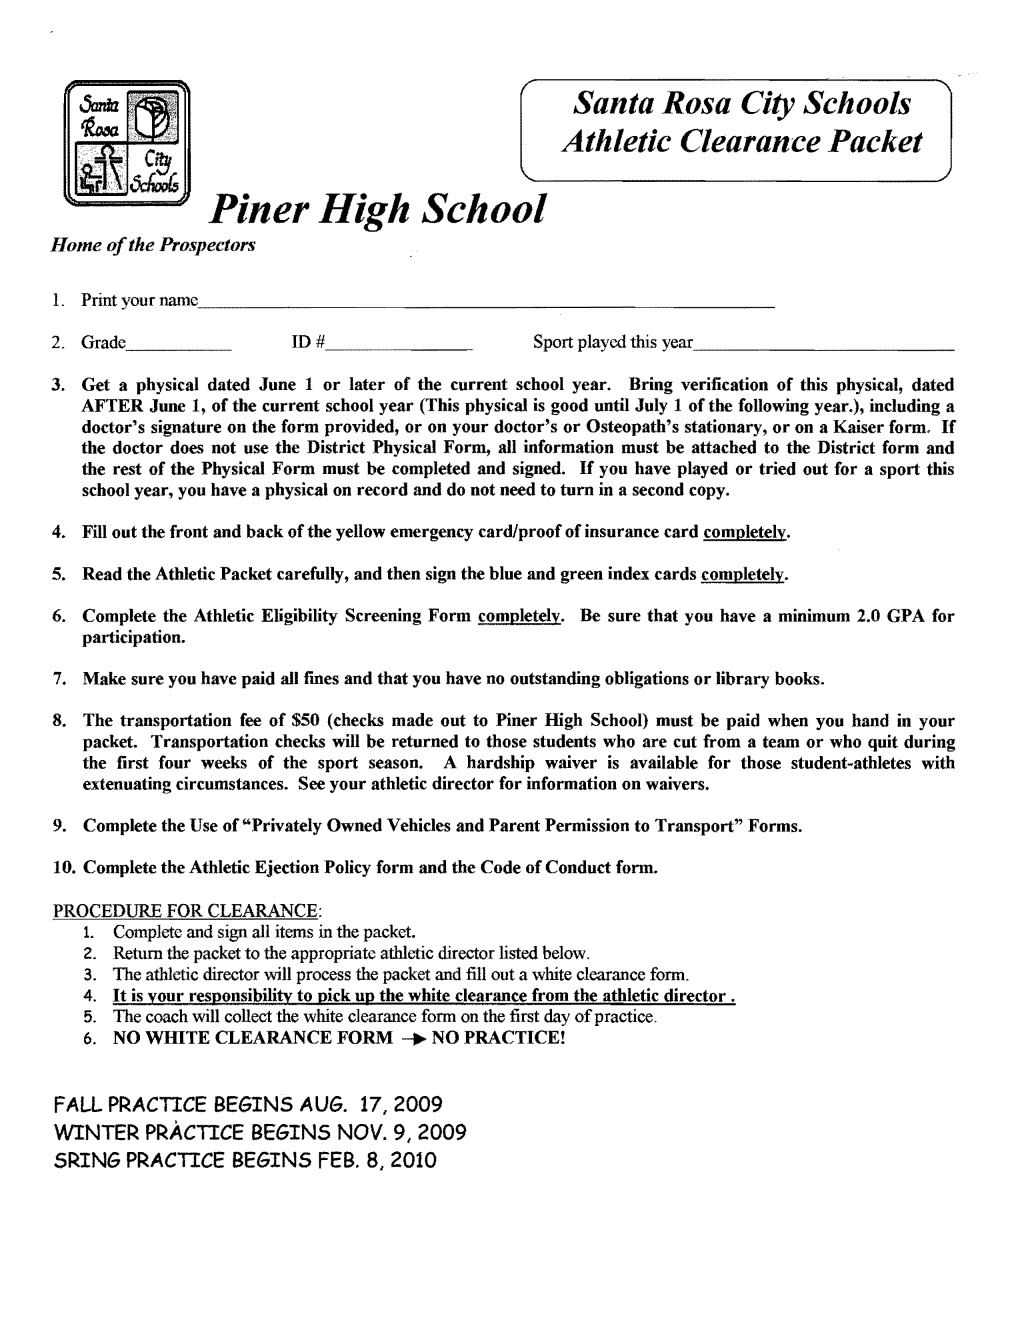 Piner High School Home Ofthe Prospectors